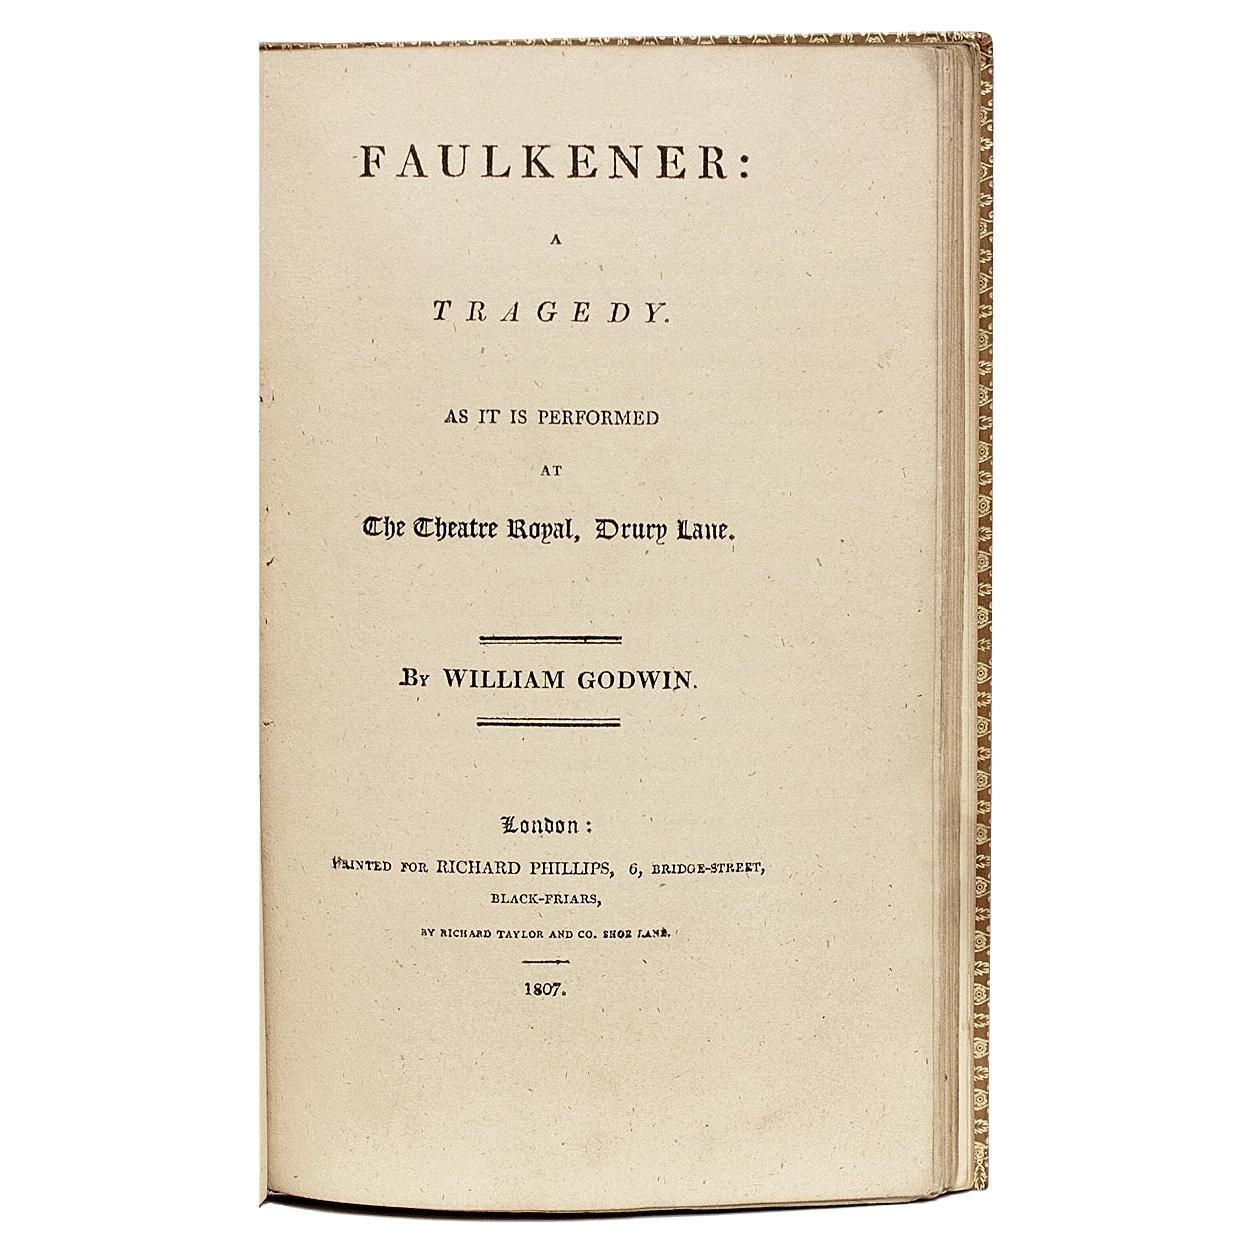 William Godwin, Faulkener, a Tragedy, première édition, 1807